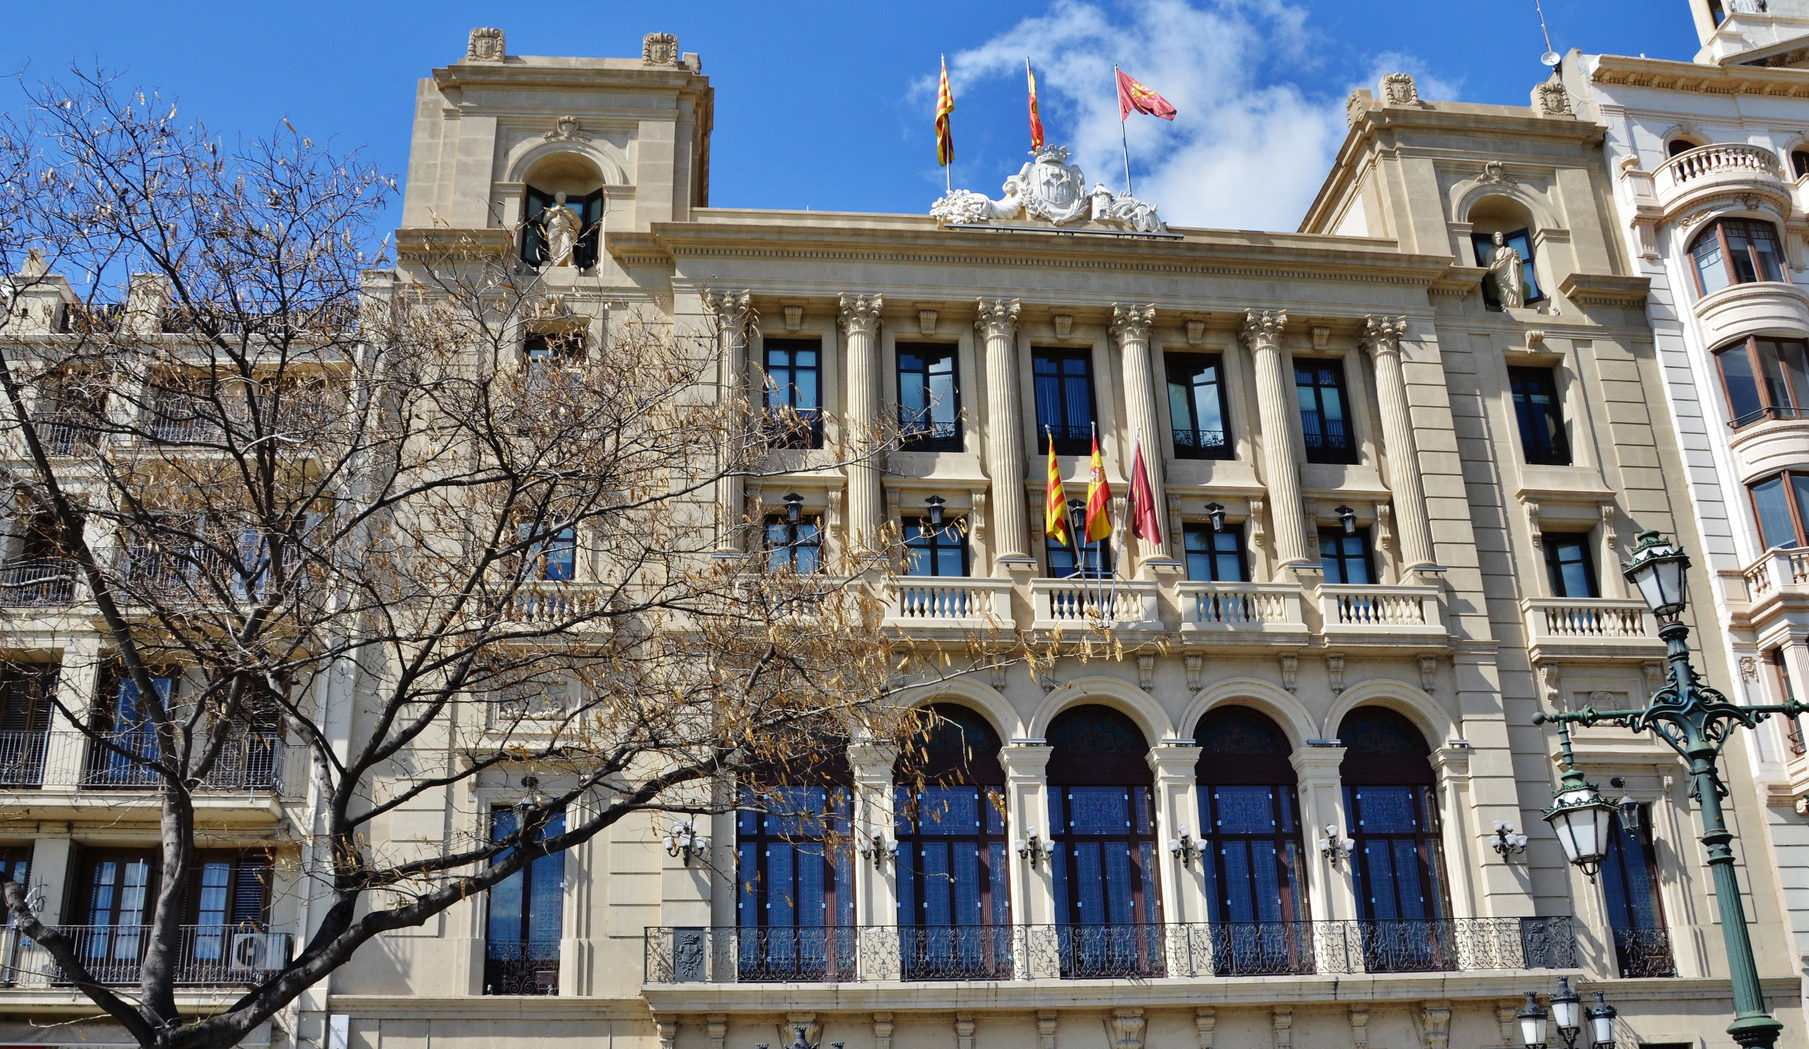 El Ayuntamiento de Lleida gestiona las acciones formativas de sus empleados de forma electrónica